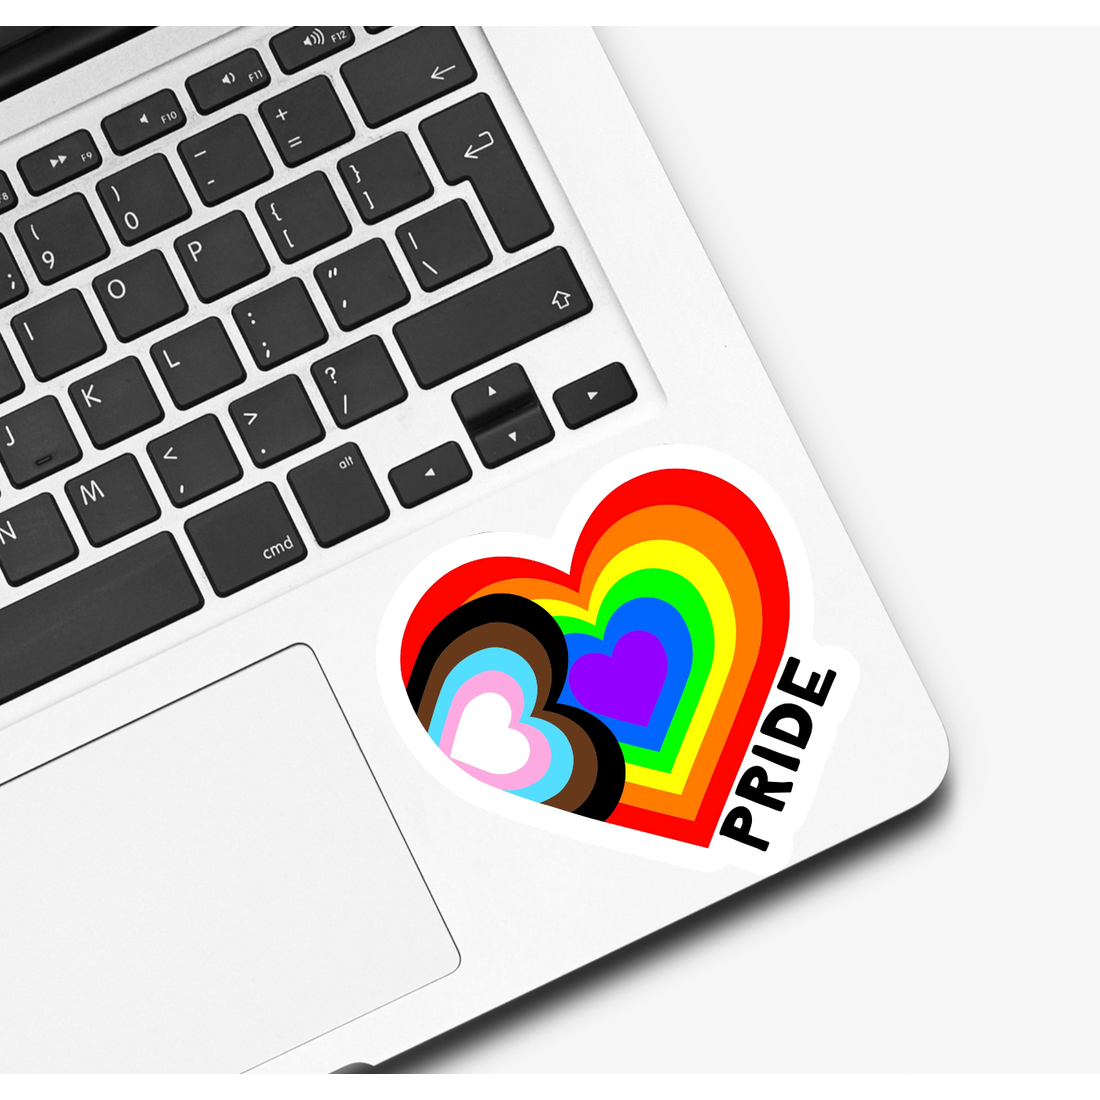 Pride Heart Sticker